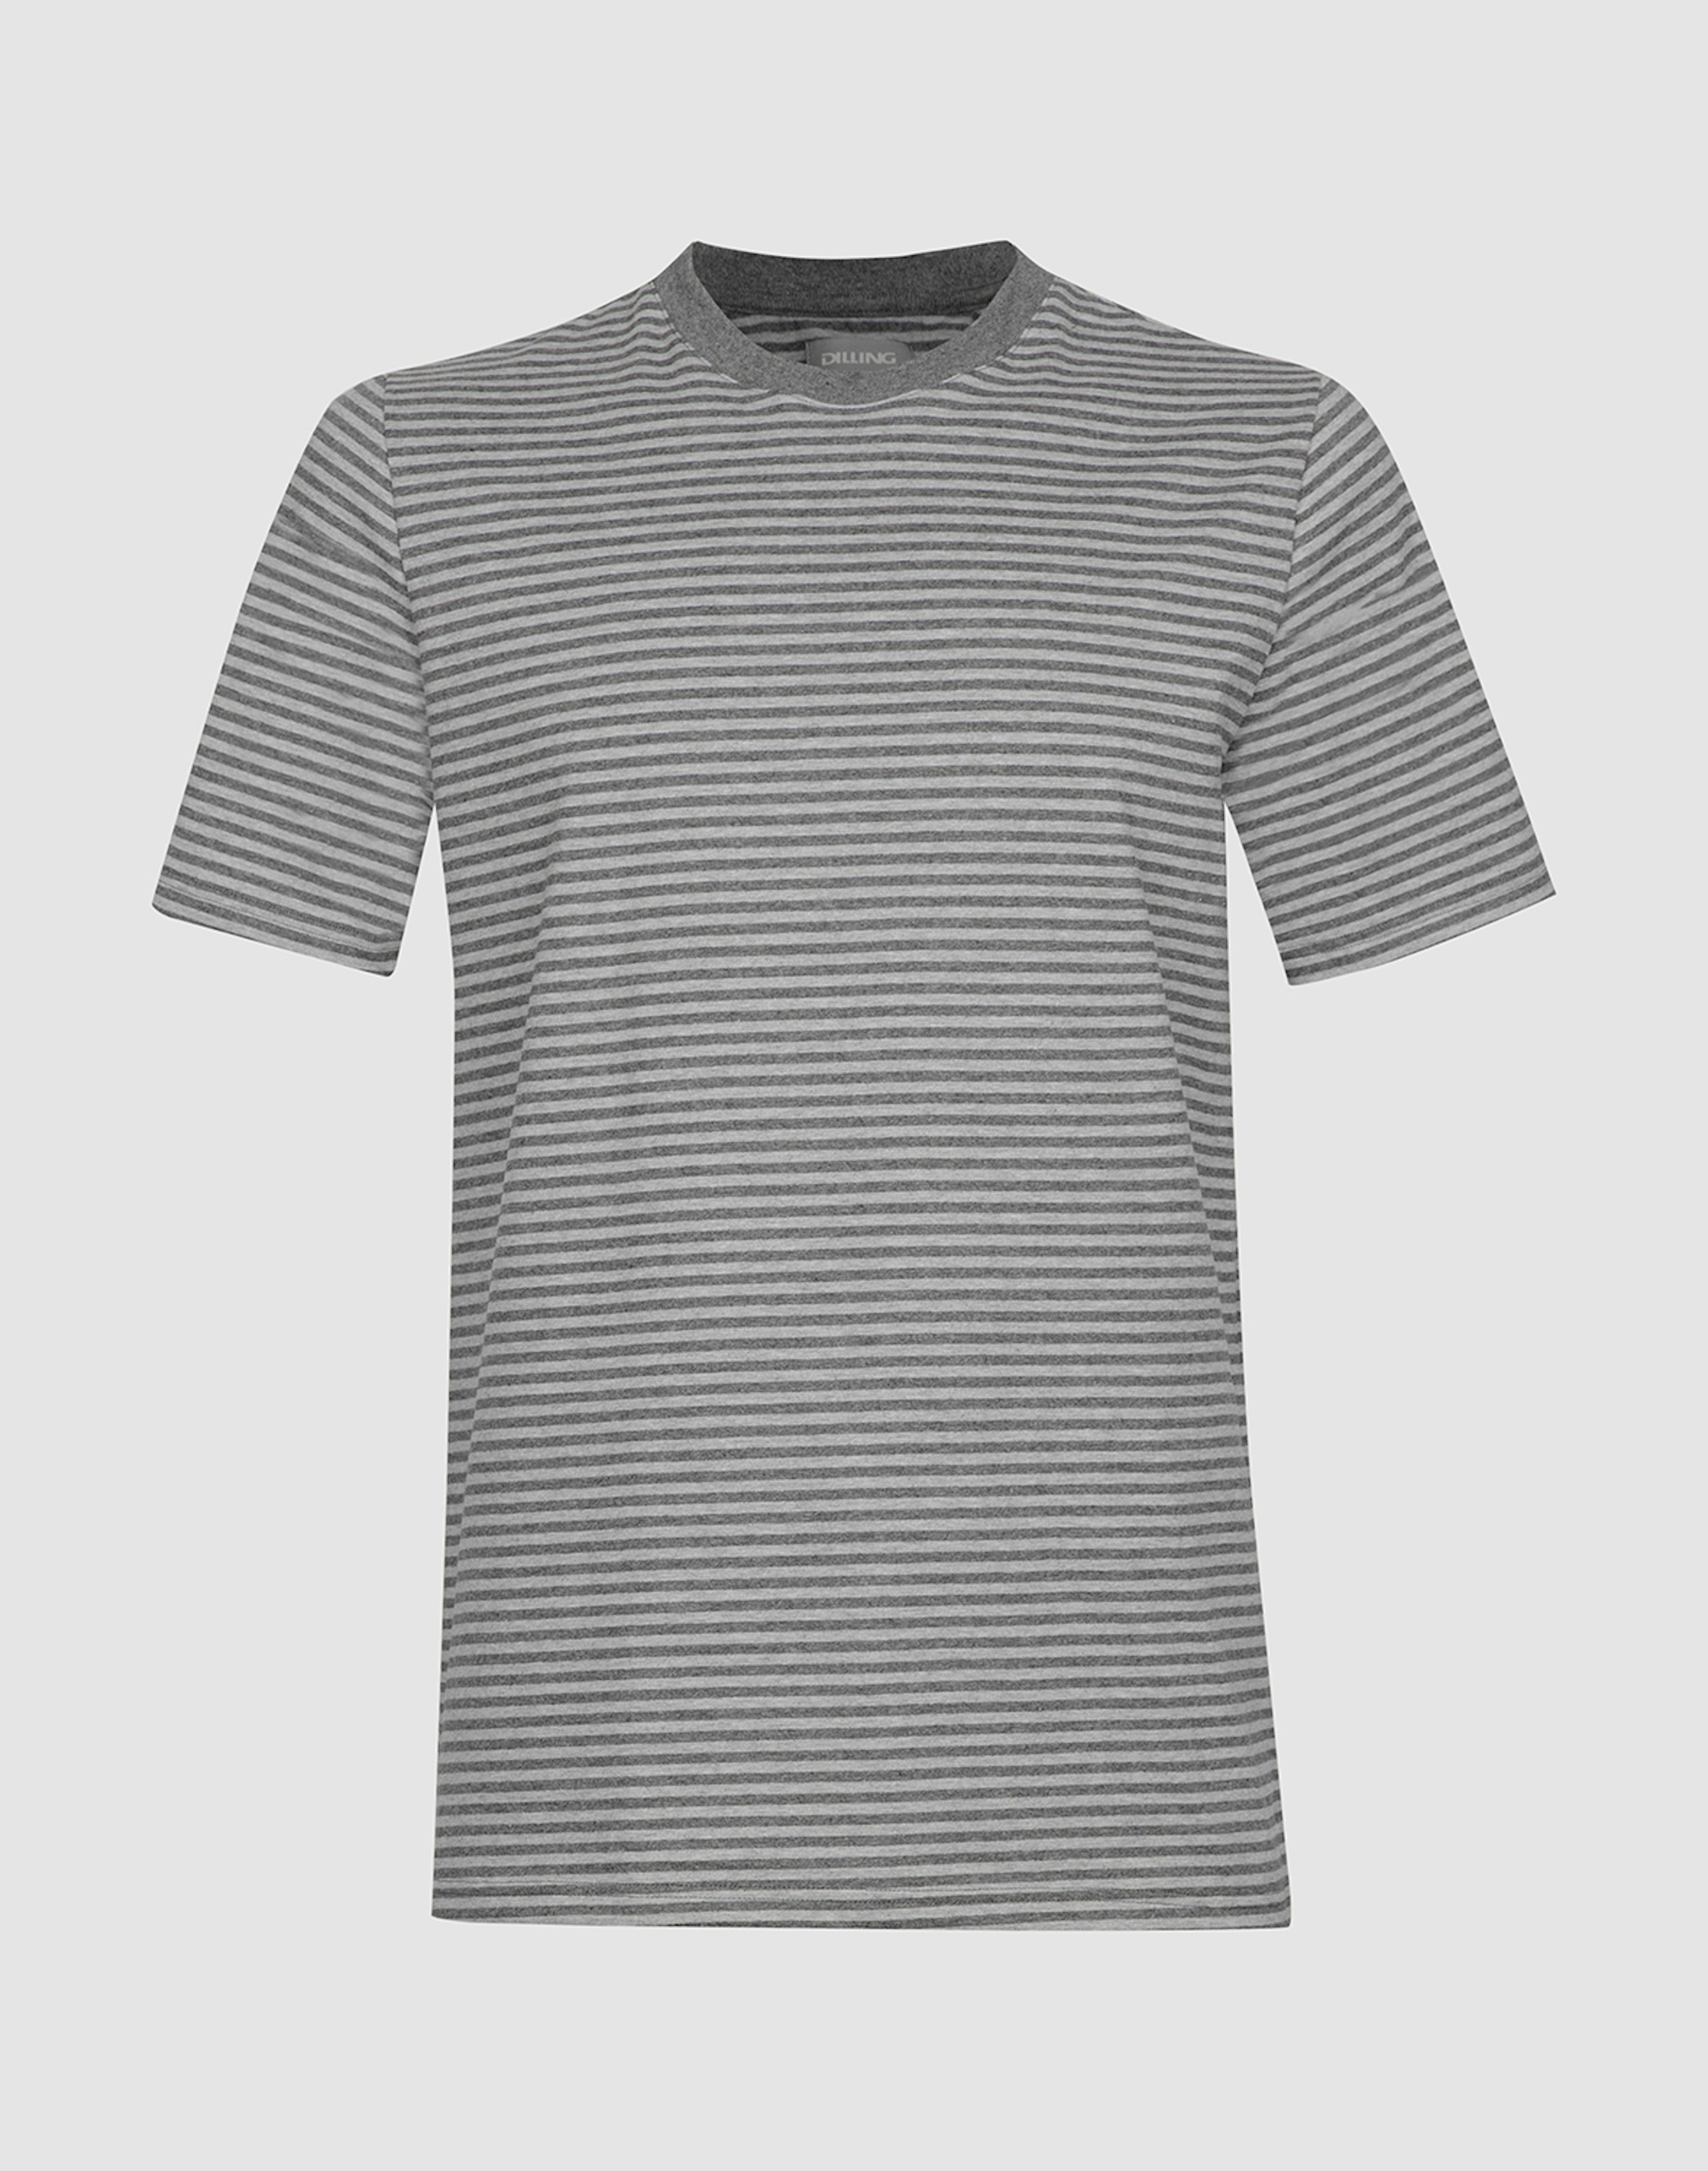 Herren T-Shirt aus Baumwolle Grau gestreift